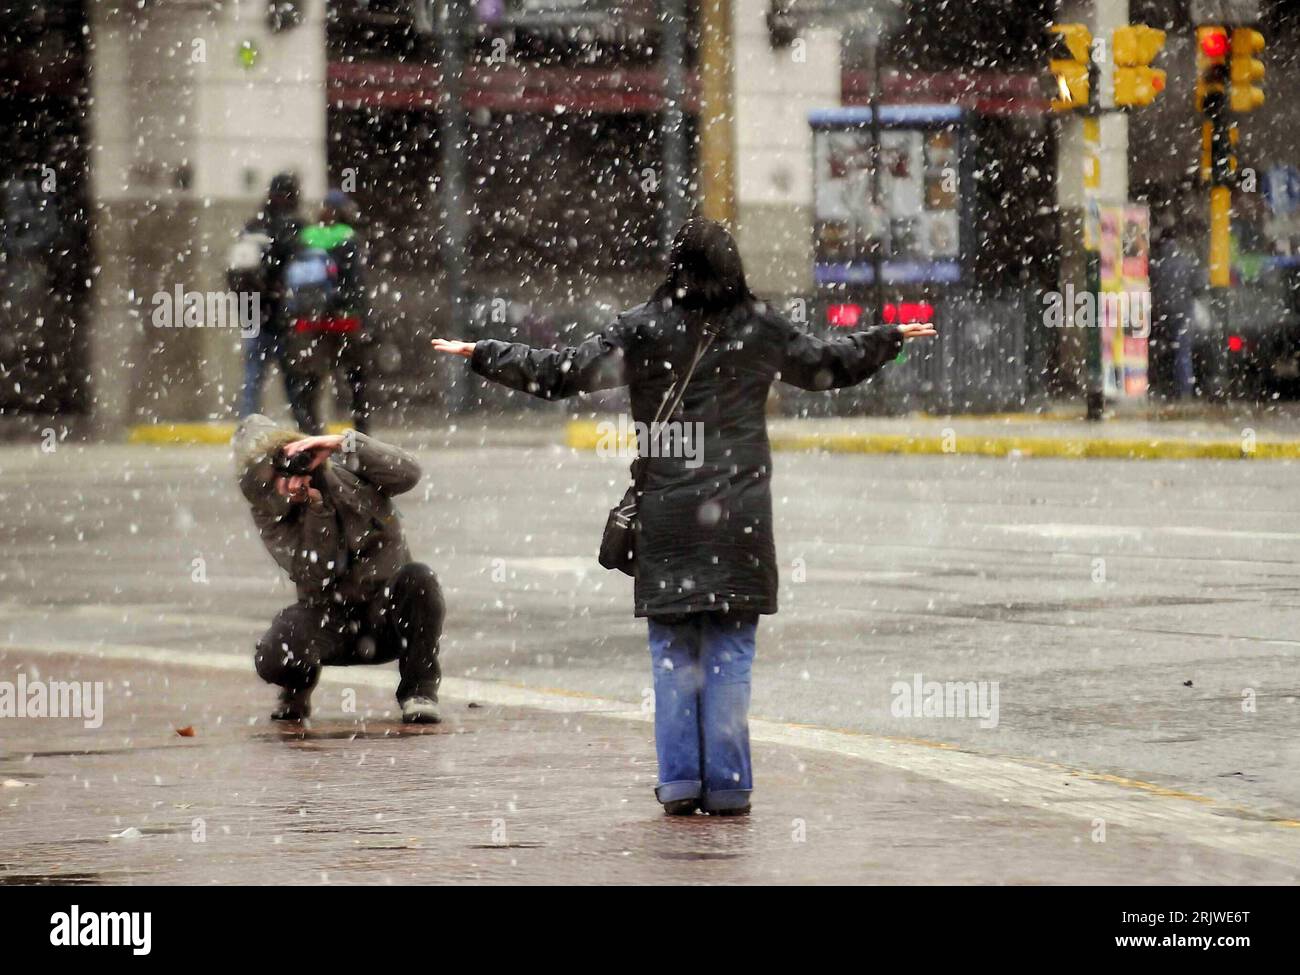 Bildnummer: 51967718  Datum: 09.07.2007  Copyright: imago/Xinhua Mann fotografiert eine Frau im Schnee - erster Schnee seit 1918 in Buenos Aires  PUBLICATIONxNOTxINxCHN , Personen; 2007, Buenos Aires  , Paar, Schnee, Schneefall, schneien, schneit; , quer, Kbdig, Gruppenbild, Argentinien,  , Wetter Stock Photo